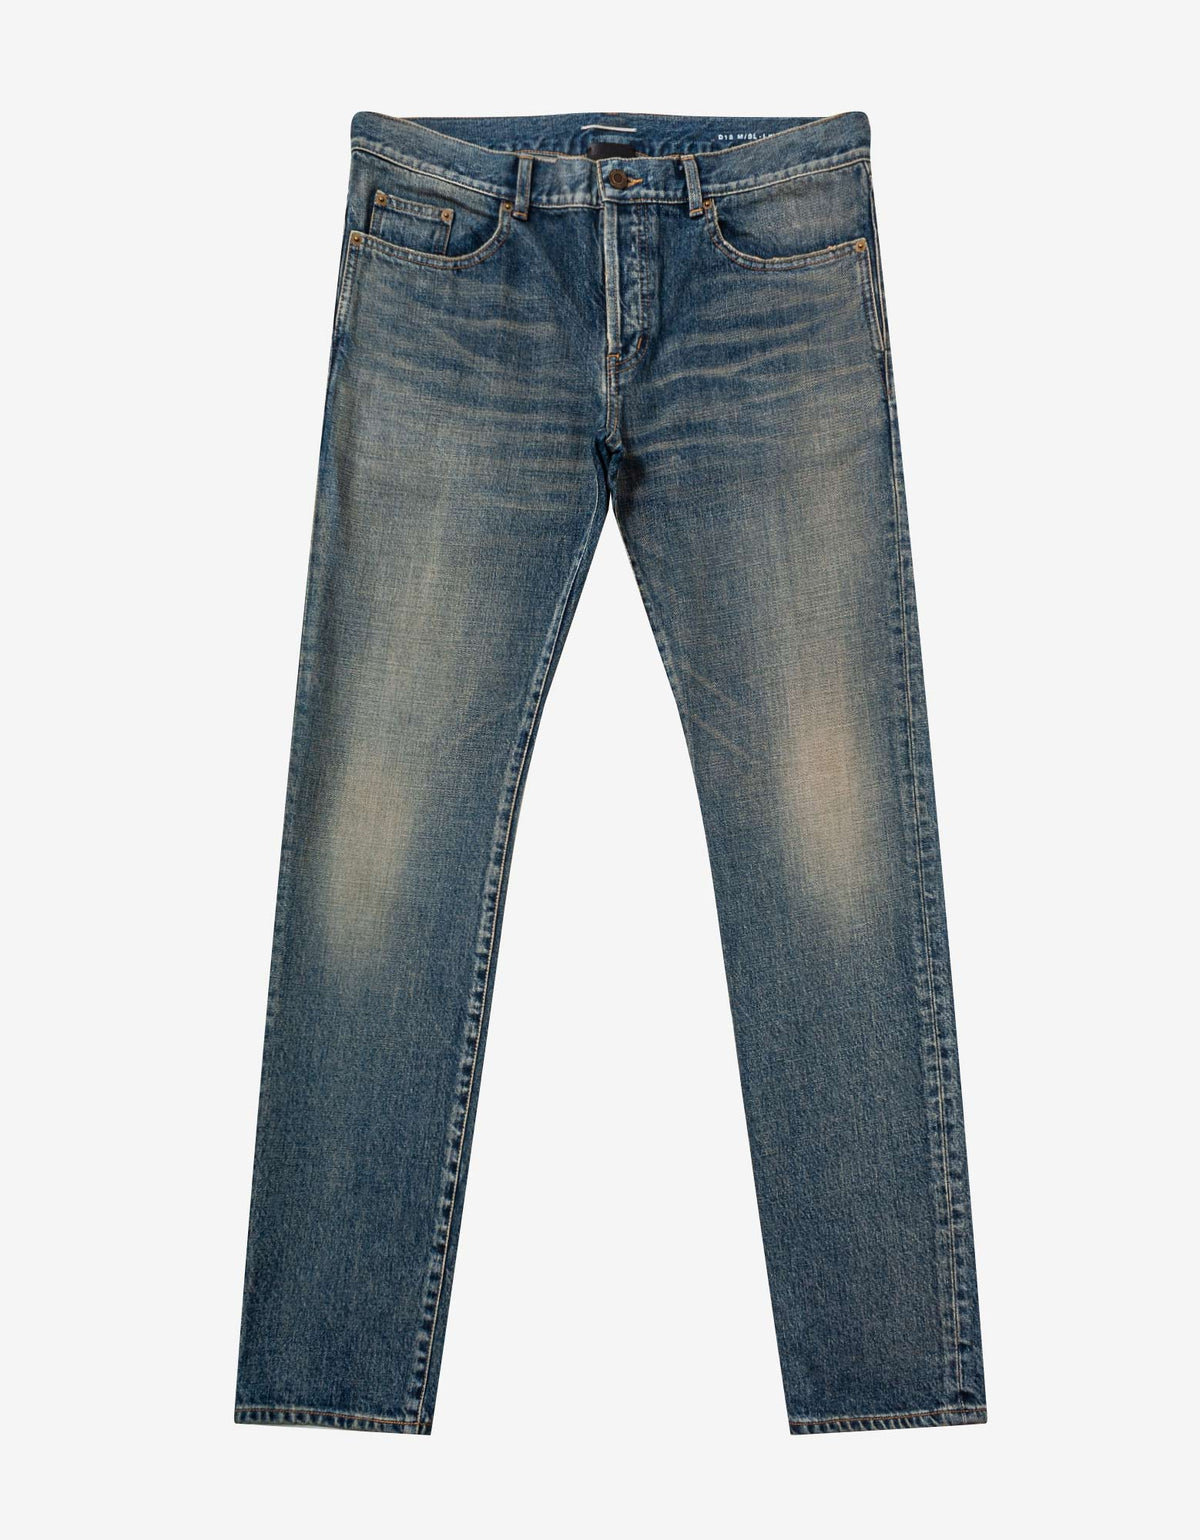 Saint Laurent Dirty Sandy Blue Slim Fit Jeans